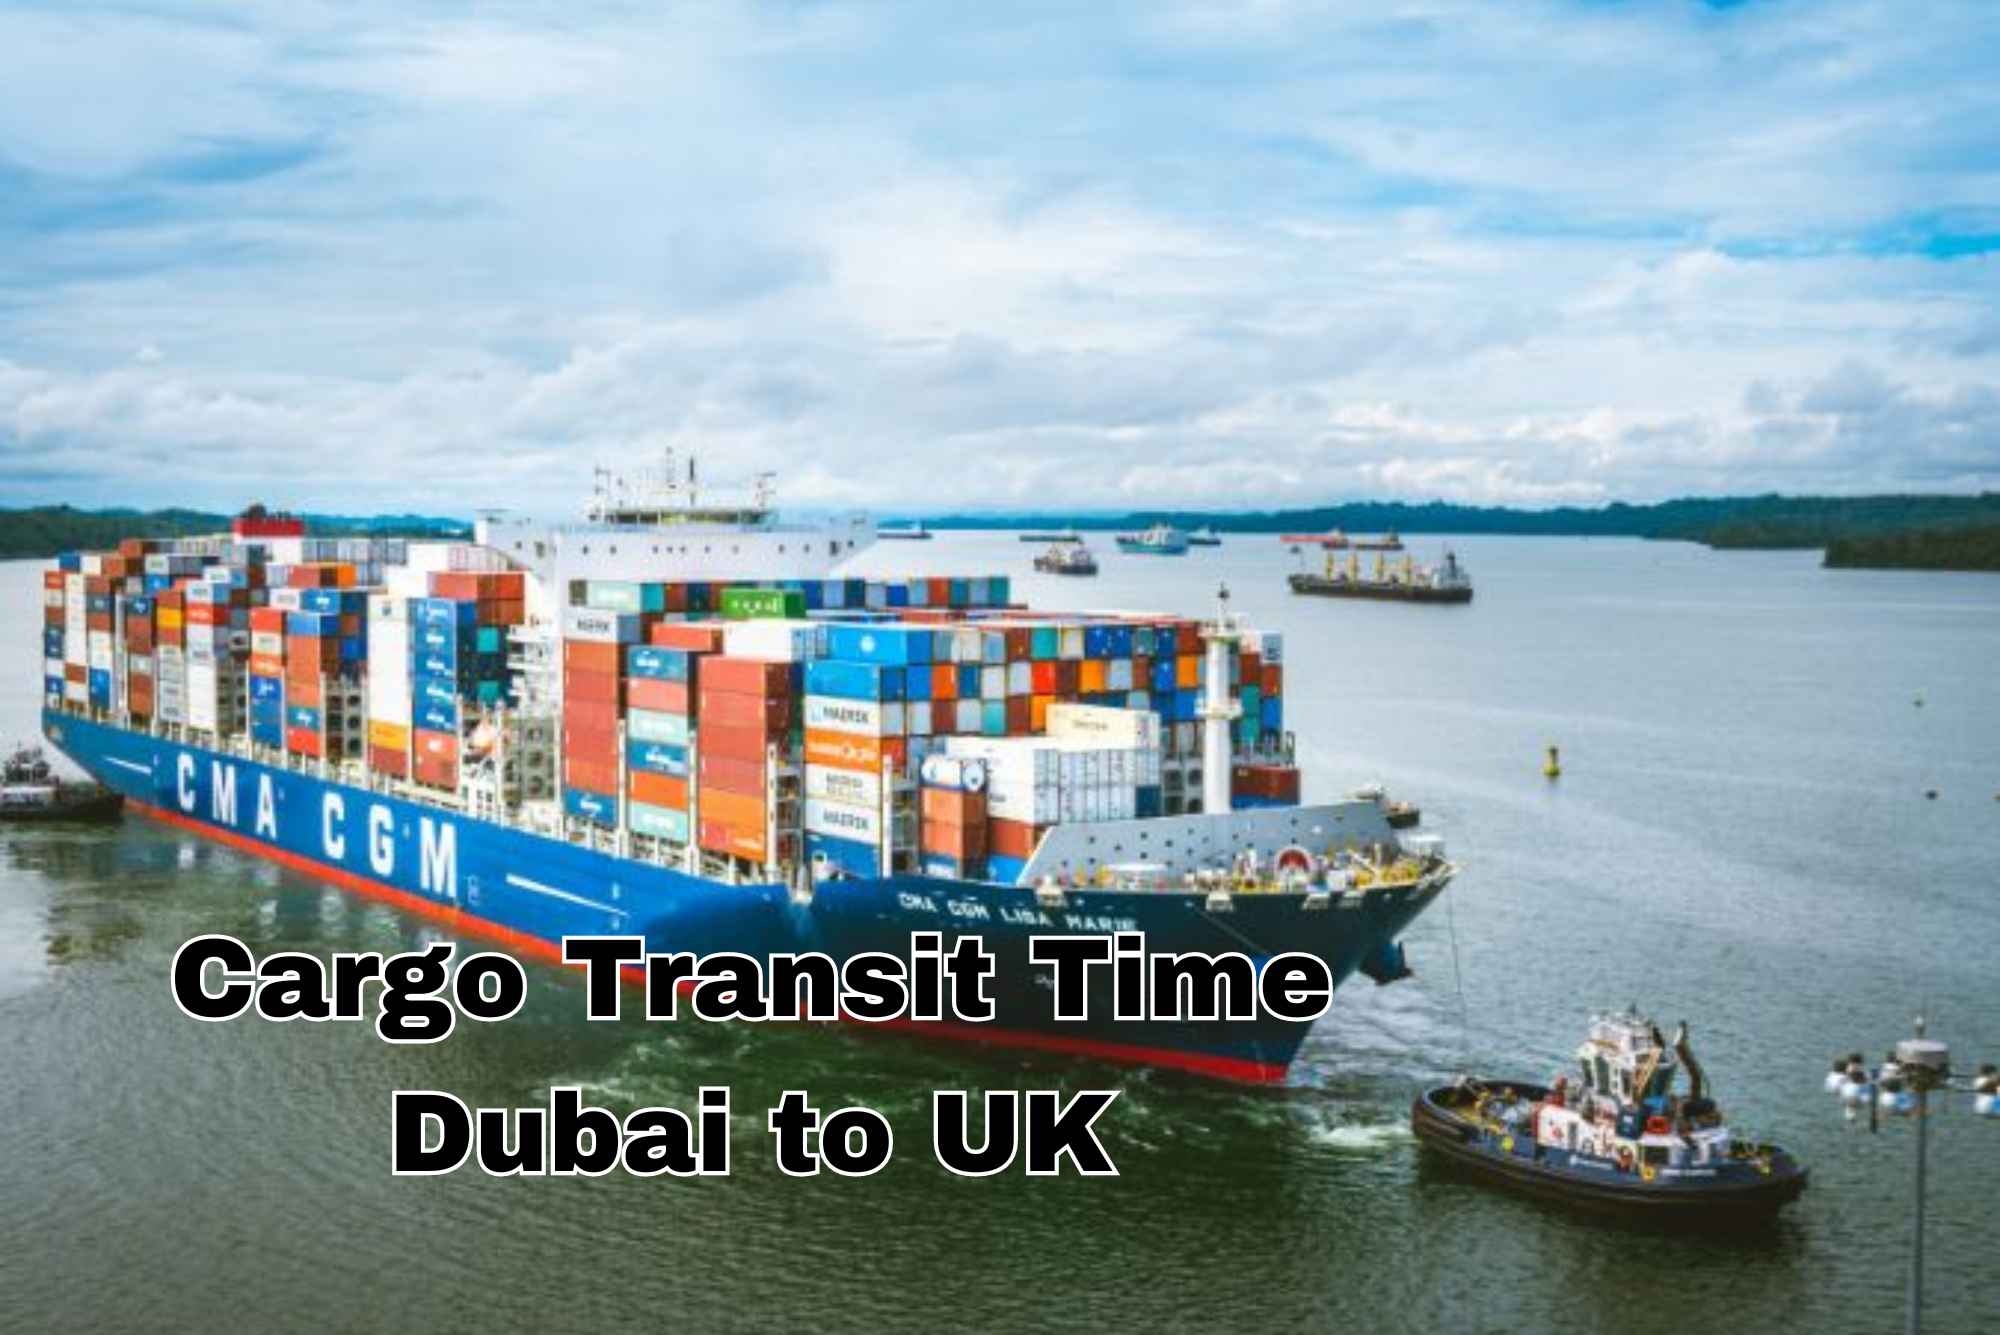 Cargo Transit Time from Dubai to UK